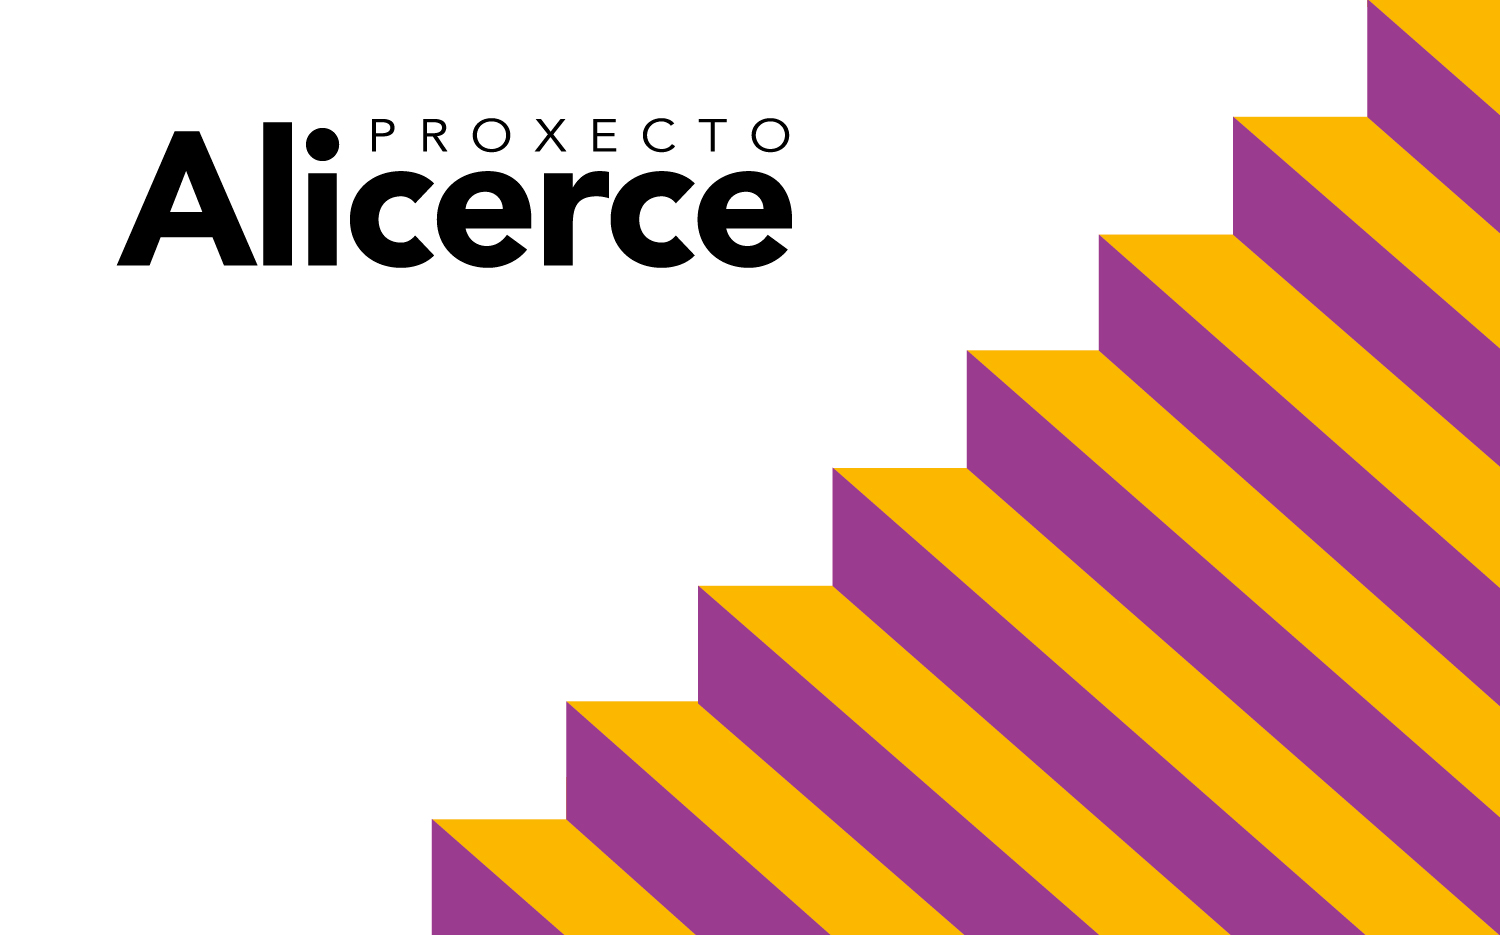 Diseño de la identidad del Proxecto Alicerce del Concello de Vigo